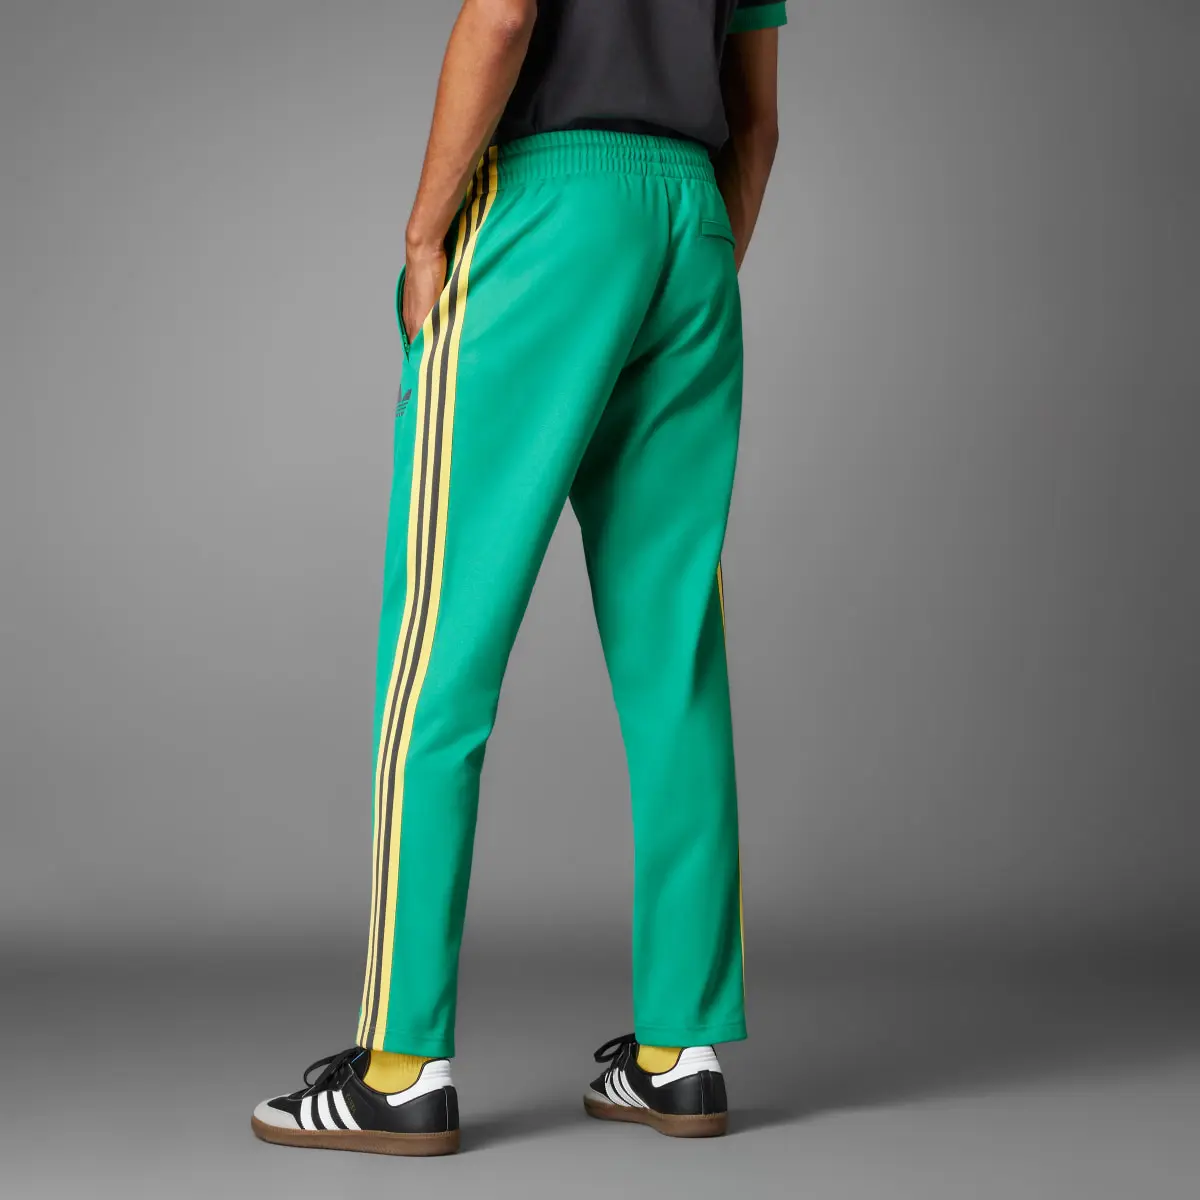 Adidas Spodnie dresowe Jamaica Beckenbauer. 2